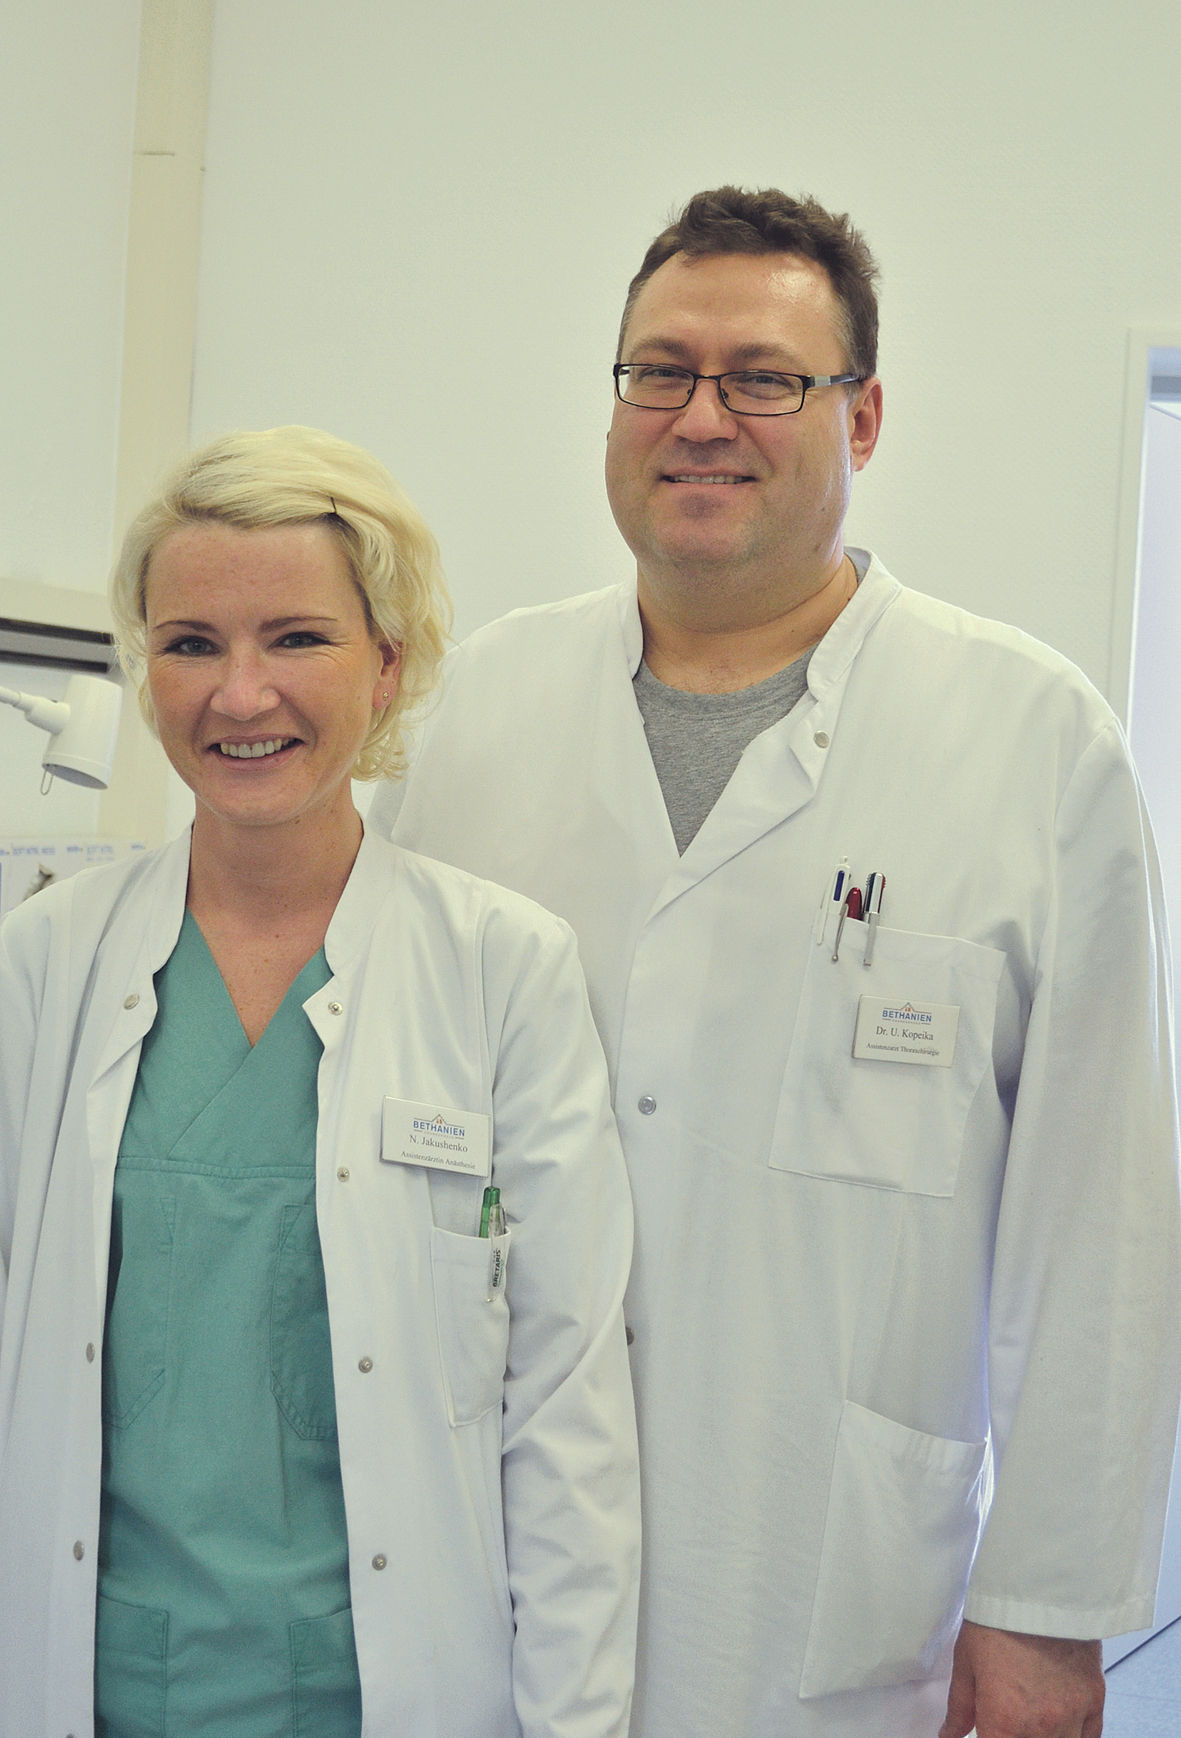 Ar sievu Nataļju Jakušenko – viņa Betānijas slimnīcā strādā par nesertificētu anestezioloģi, gatavojas sertifikāta atzīšanas eksāmenam